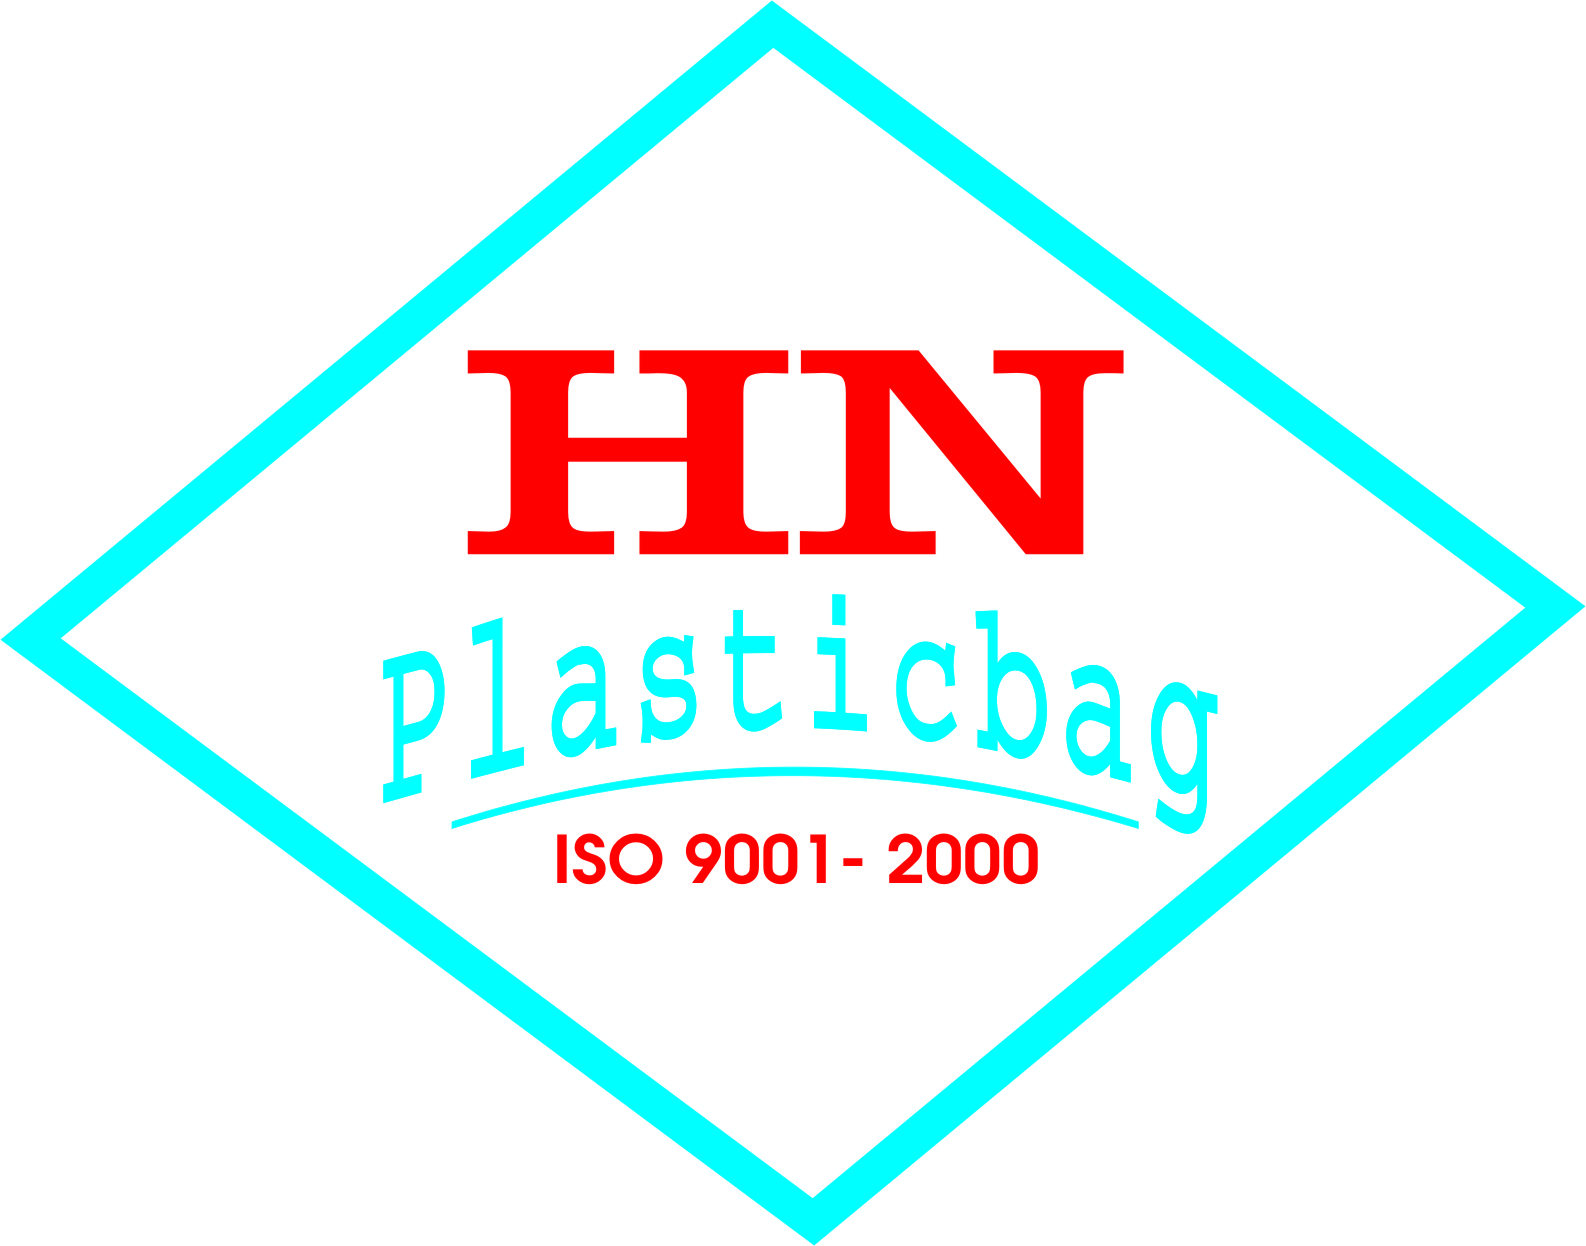 HANOI PLASTIC BAG JSC